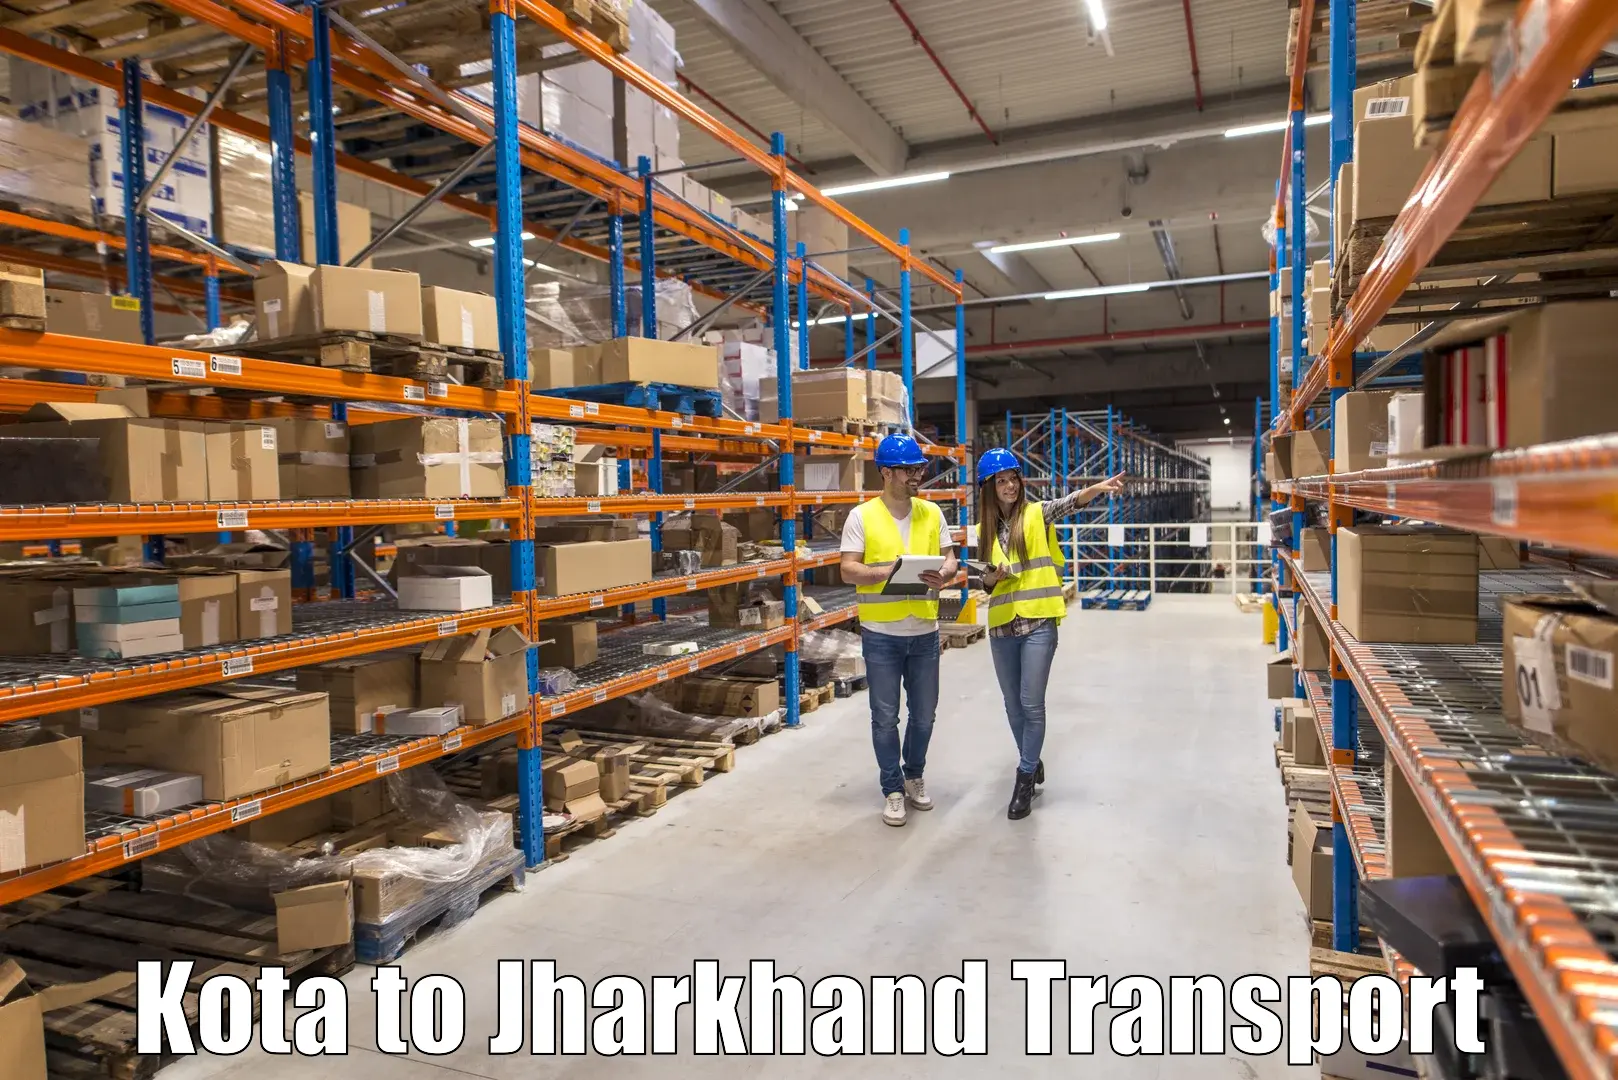 All India transport service Kota to Daltonganj